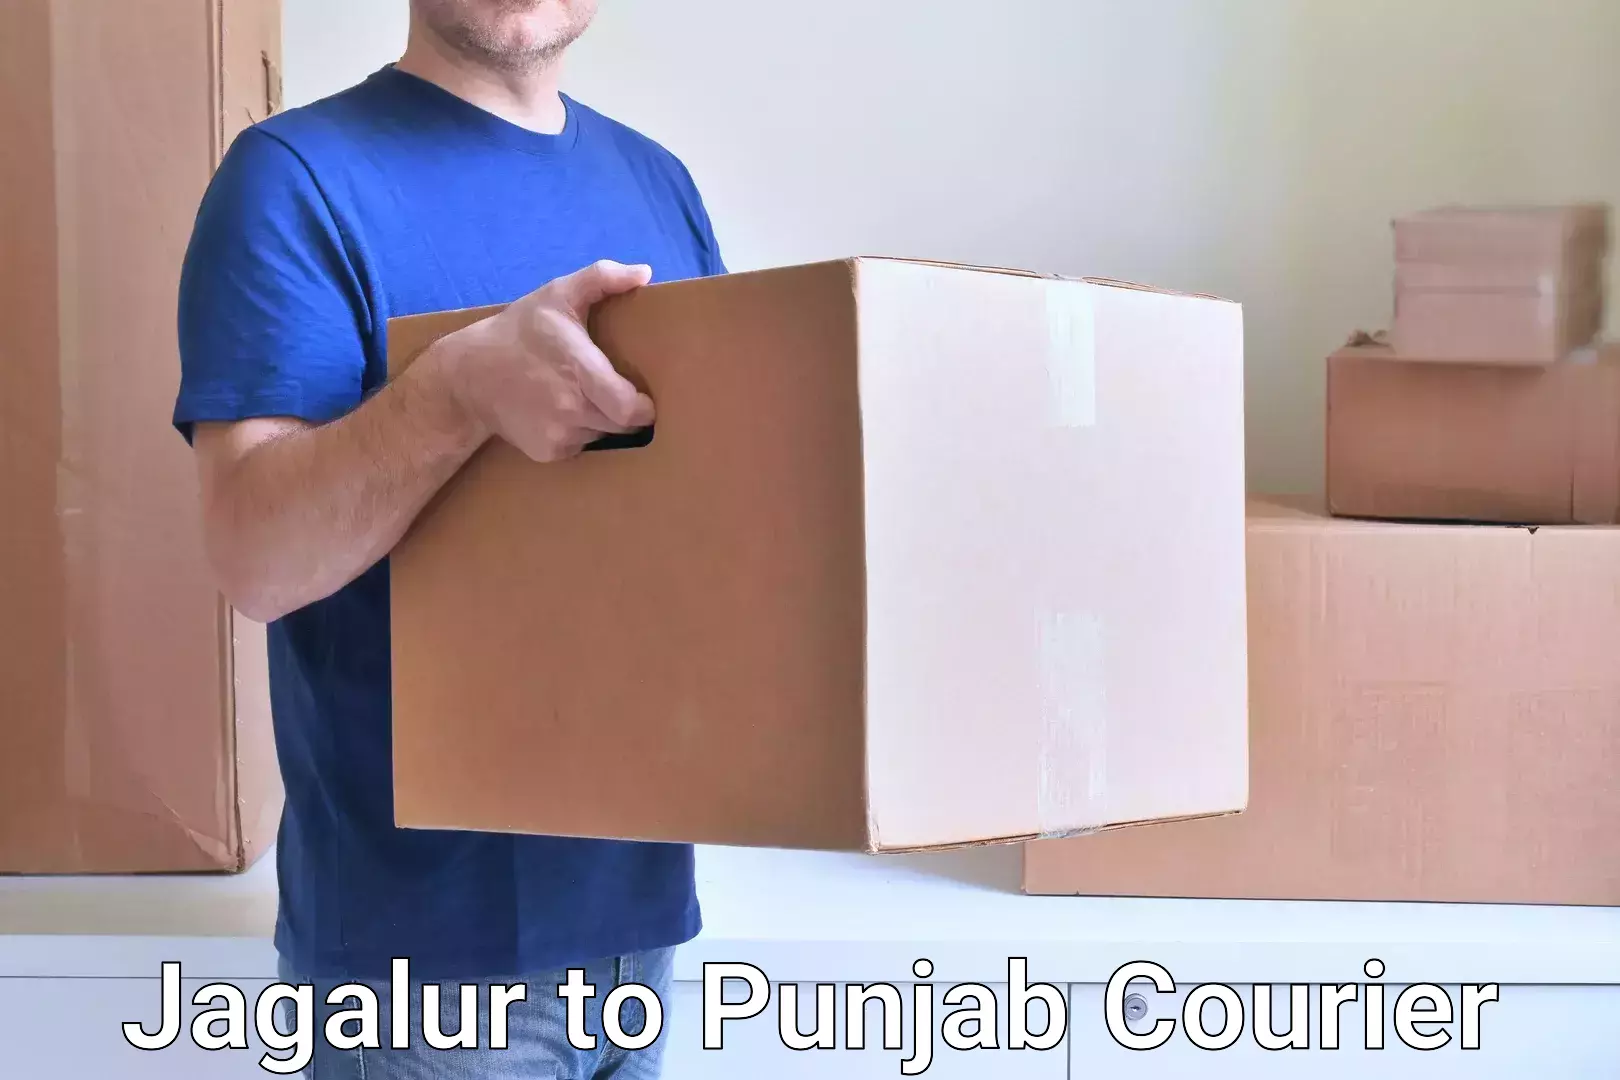 Reliable parcel services Jagalur to Punjab